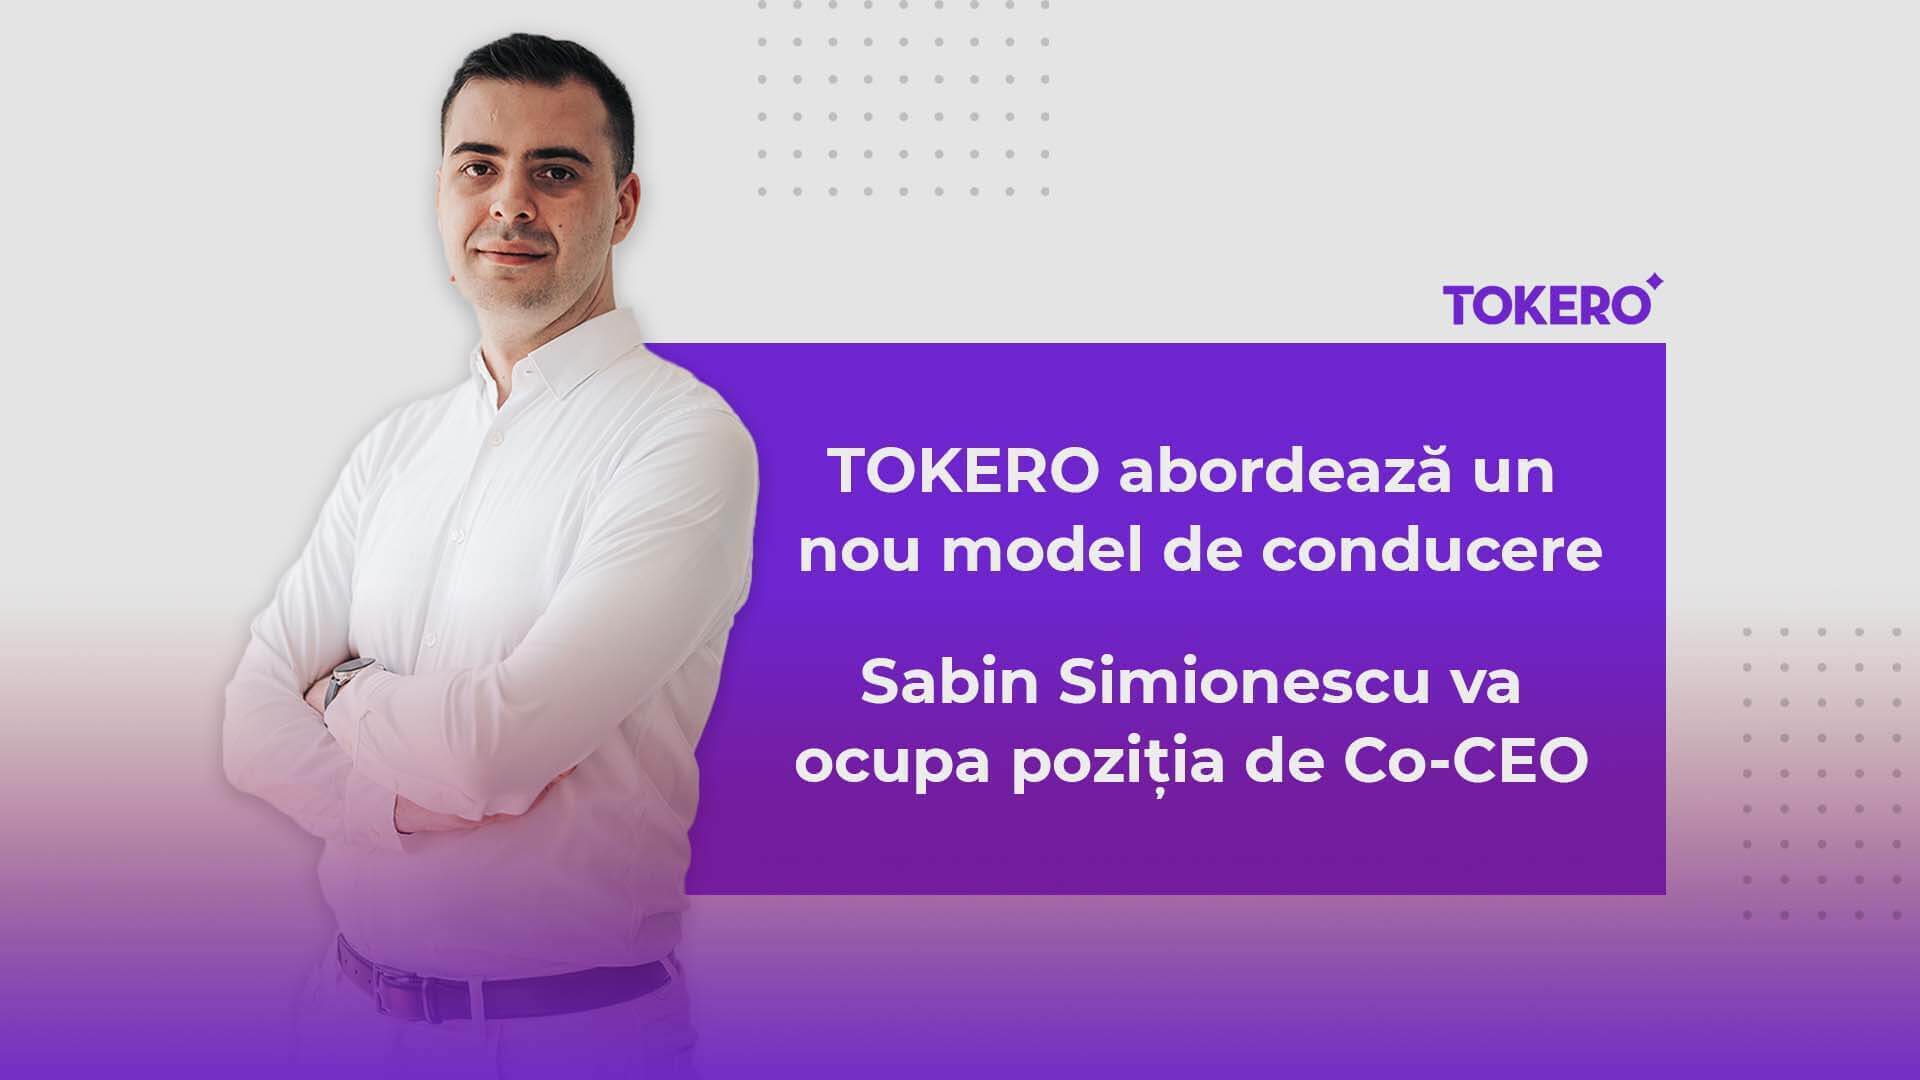 TOKERO abordează un nou model de conducere – Sabin Simionescu va ocupa poziția de Co-CEO